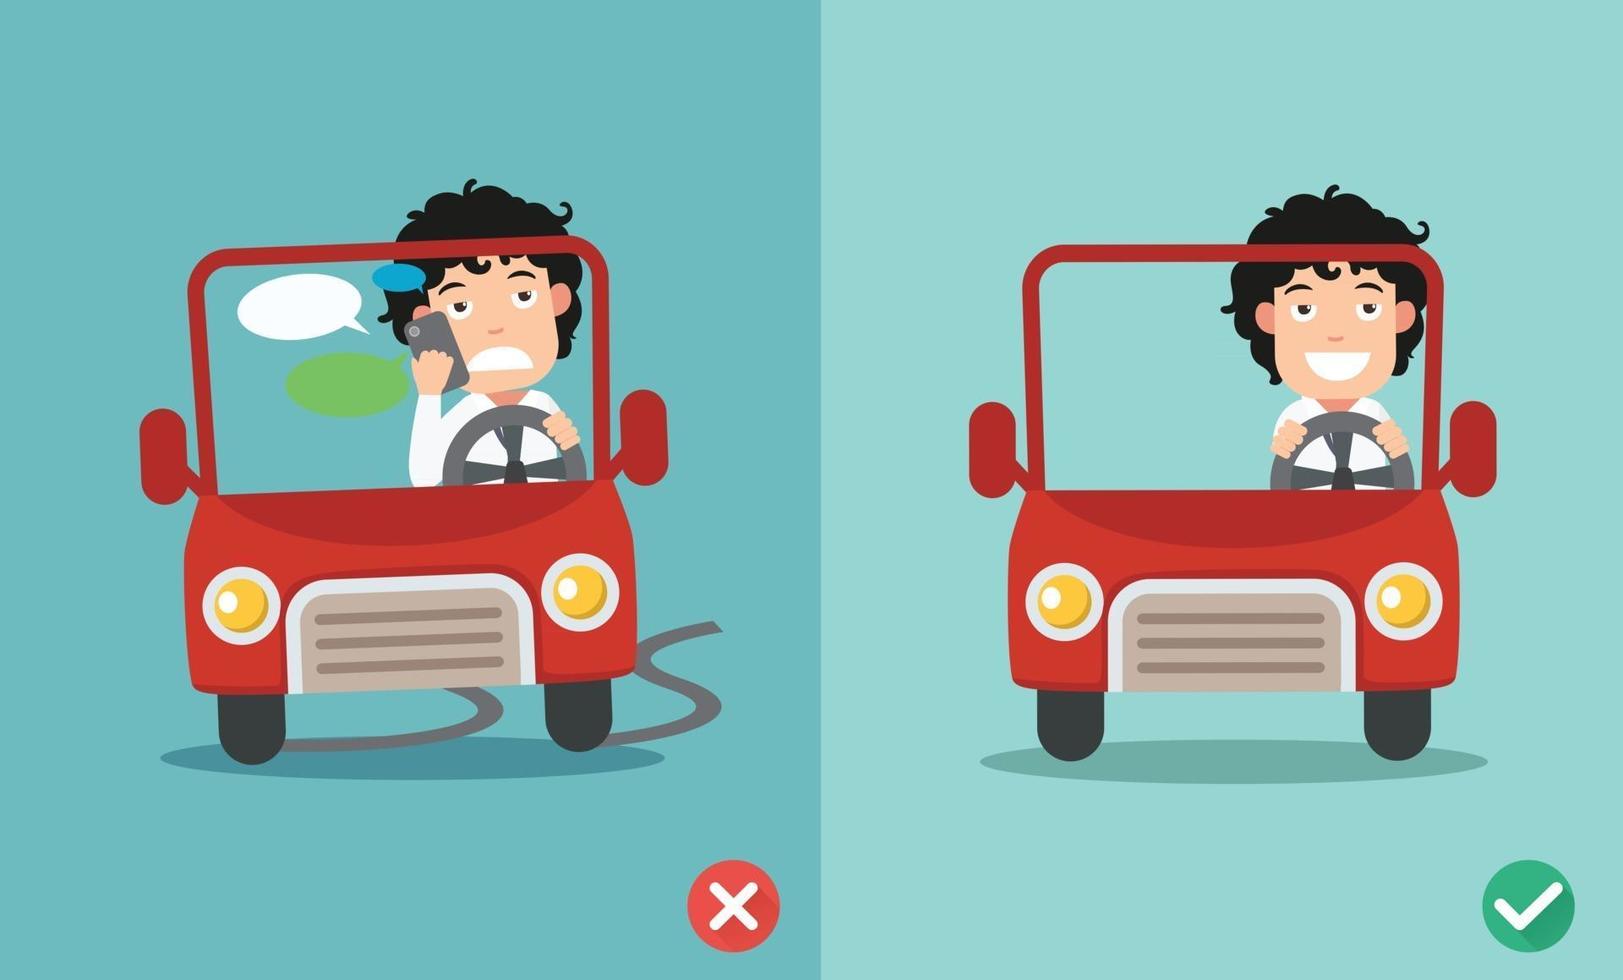 pas de textos, pas de conversation, bonnes et mauvaises manières de conduire pour éviter les accidents de voiture. illustration vectorielle vecteur